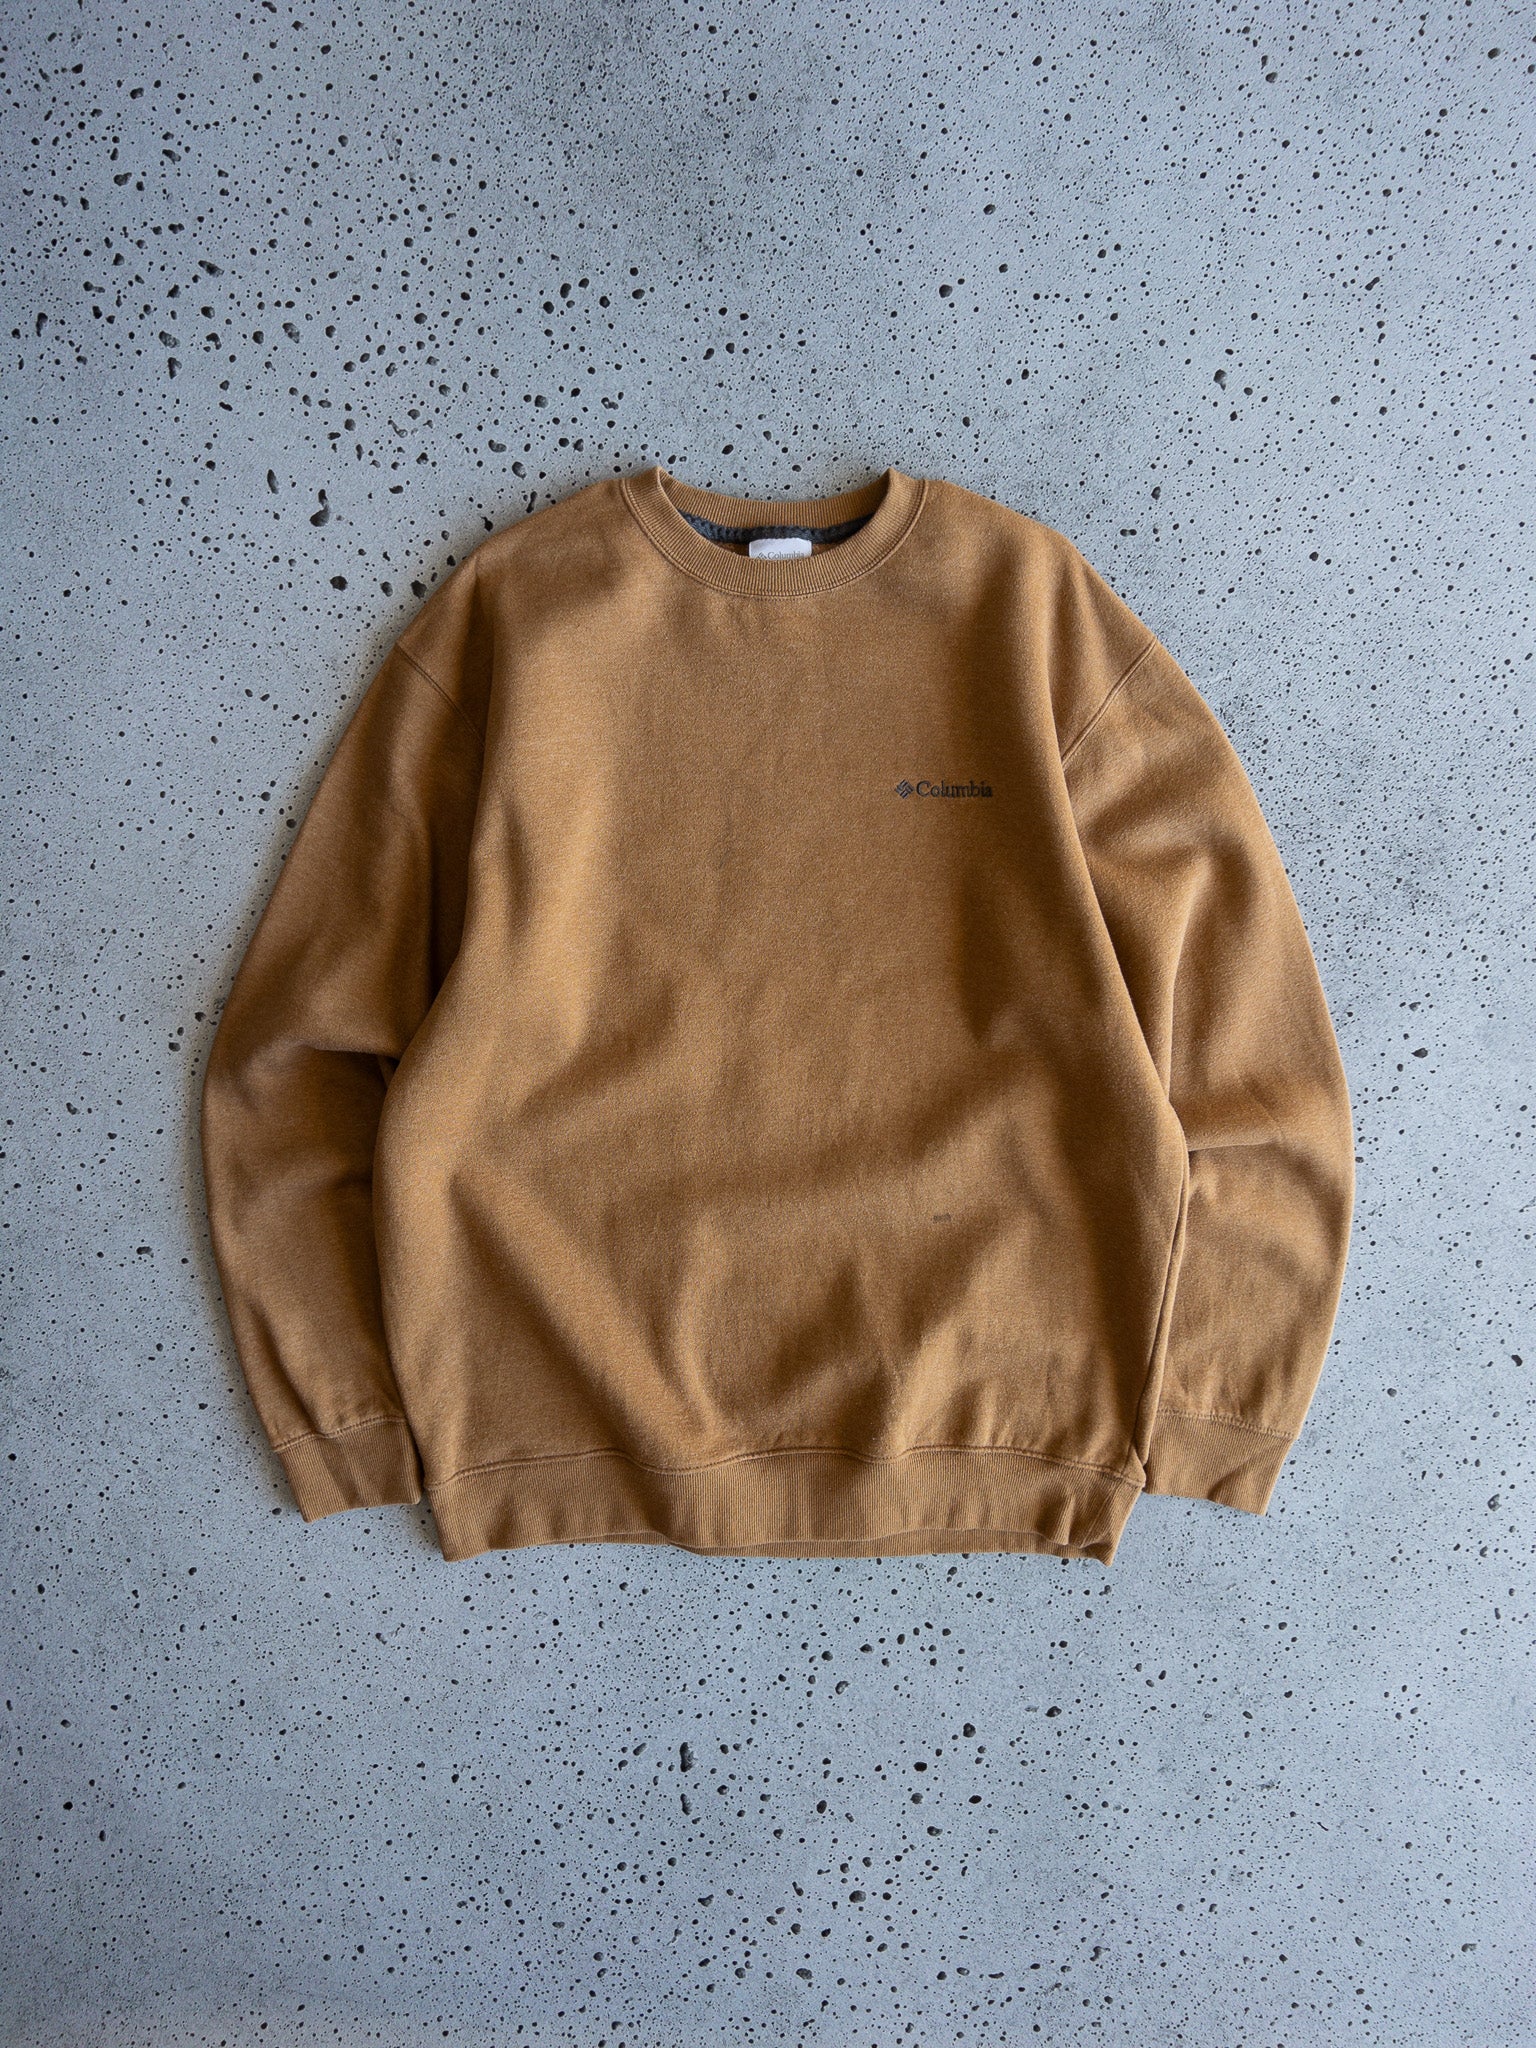 Vintage Columbia Sweatshirt (L)